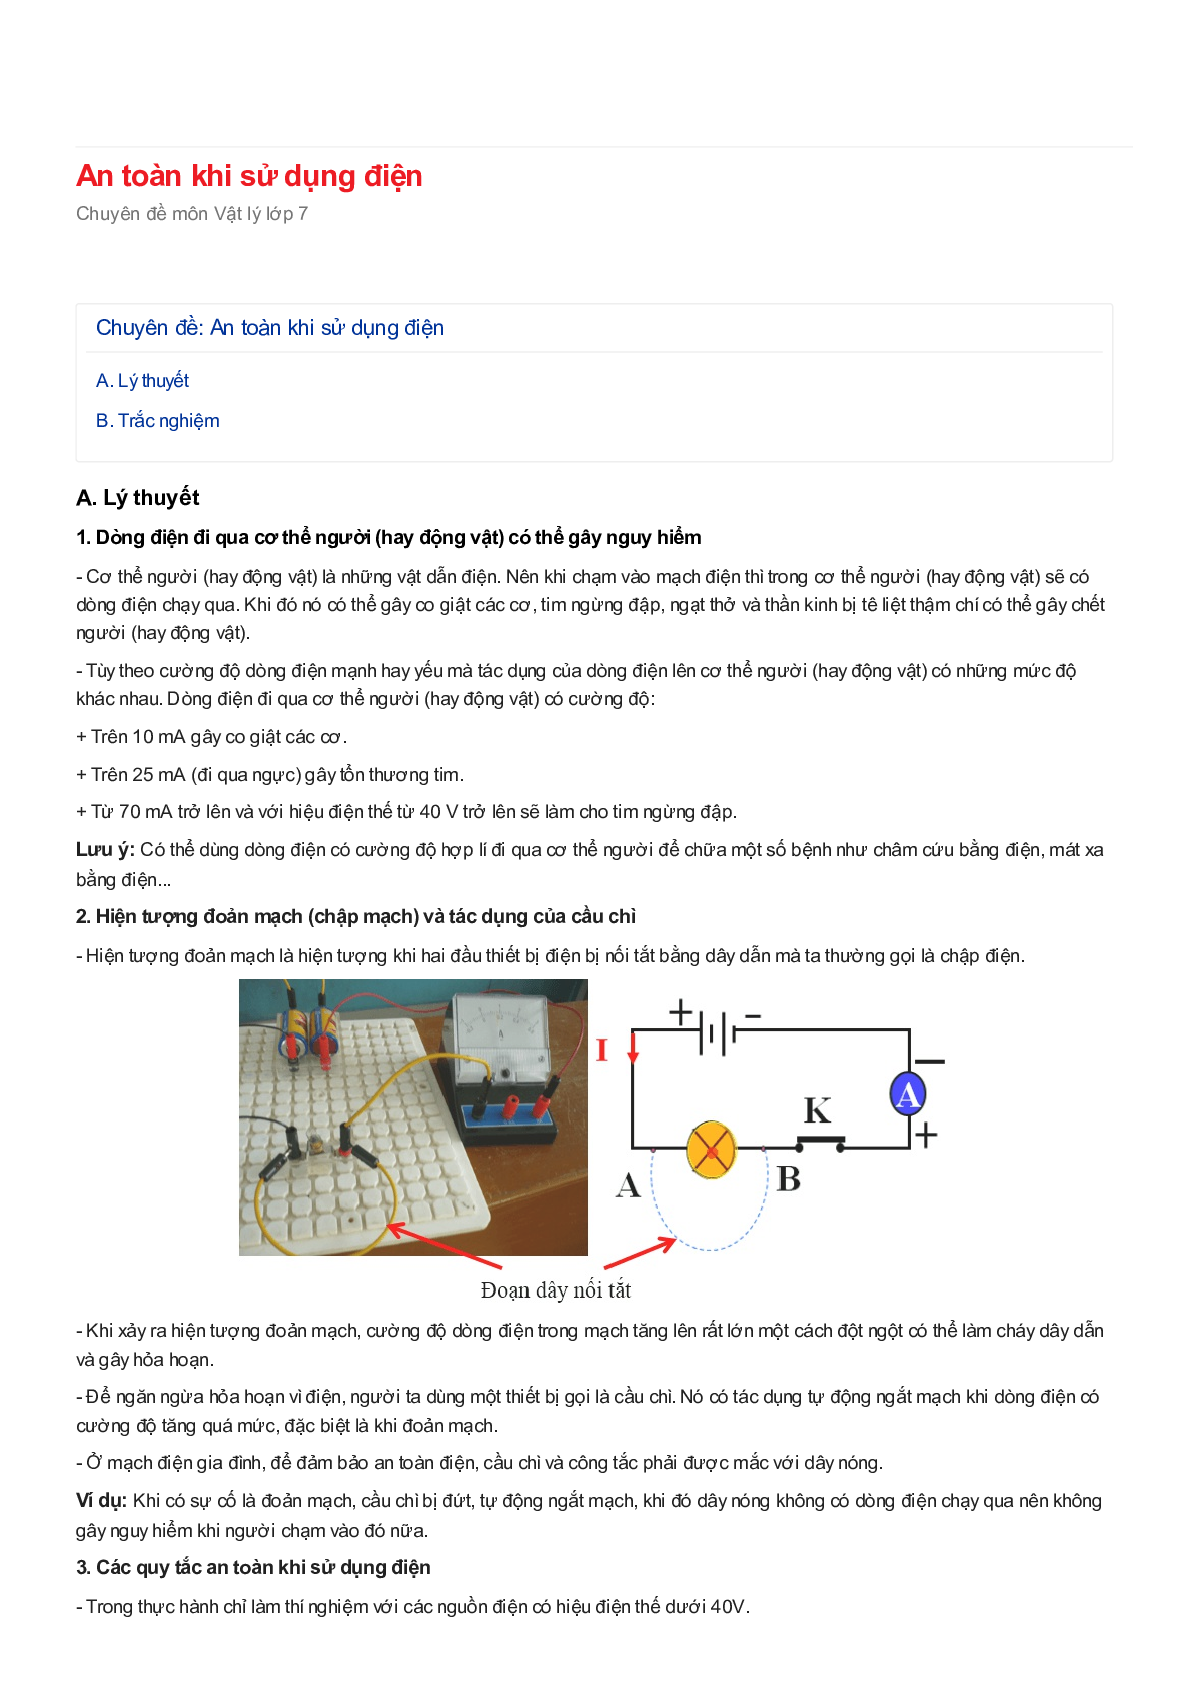 Chuyên đề Vật lý 7: An toàn khi sử dụng điện (trang 1)